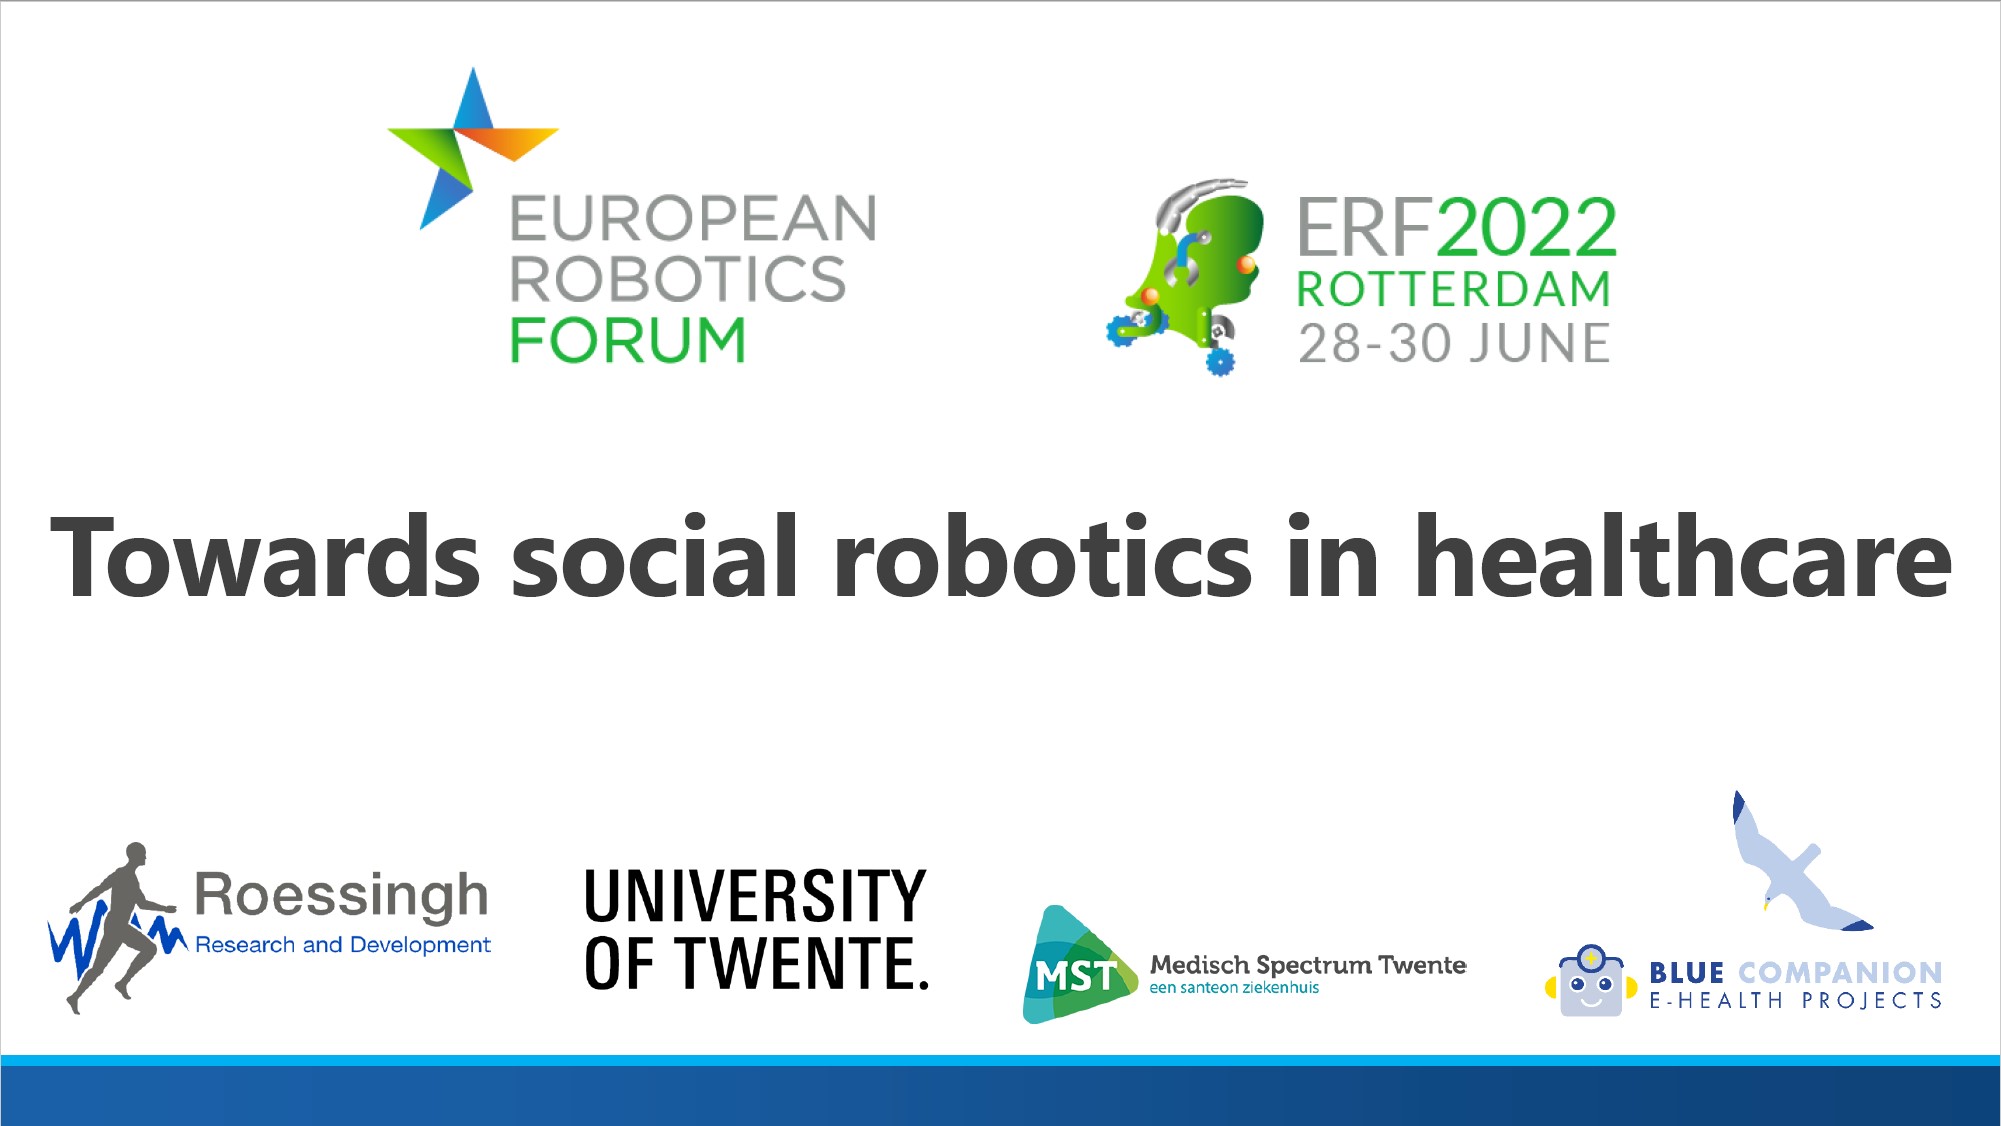 European Robotics Forum 2022